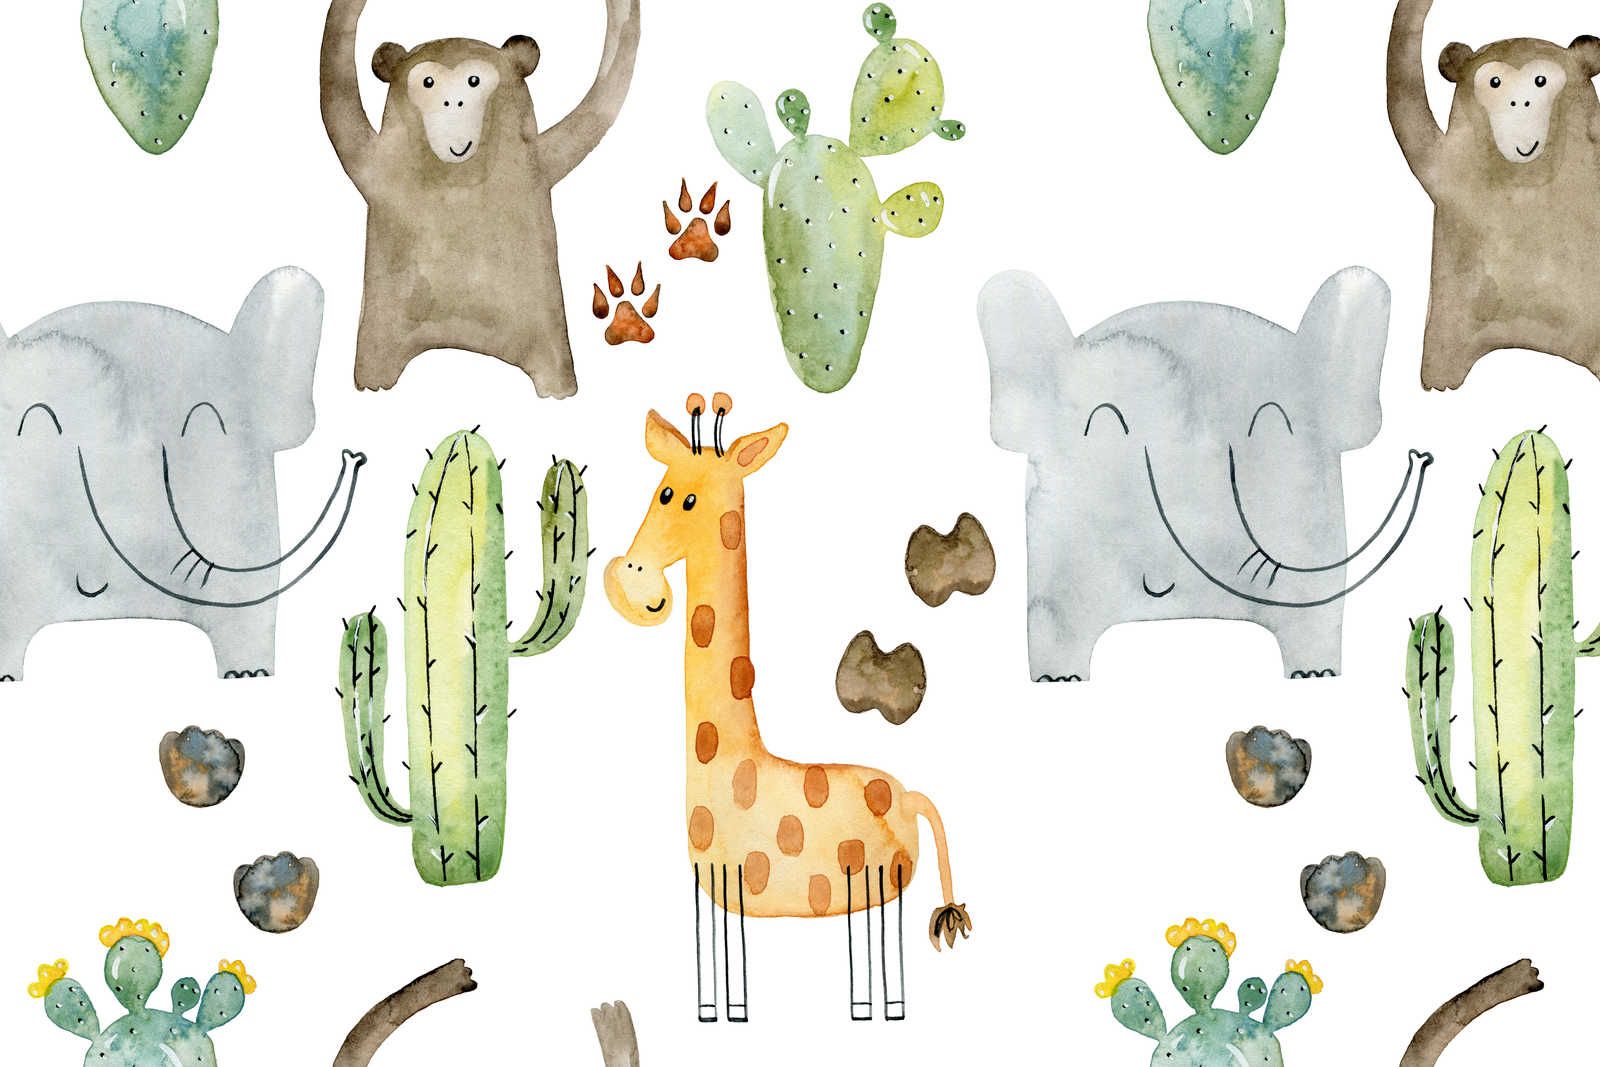             Canvas met dieren en cactussen - 90 cm x 60 cm
        